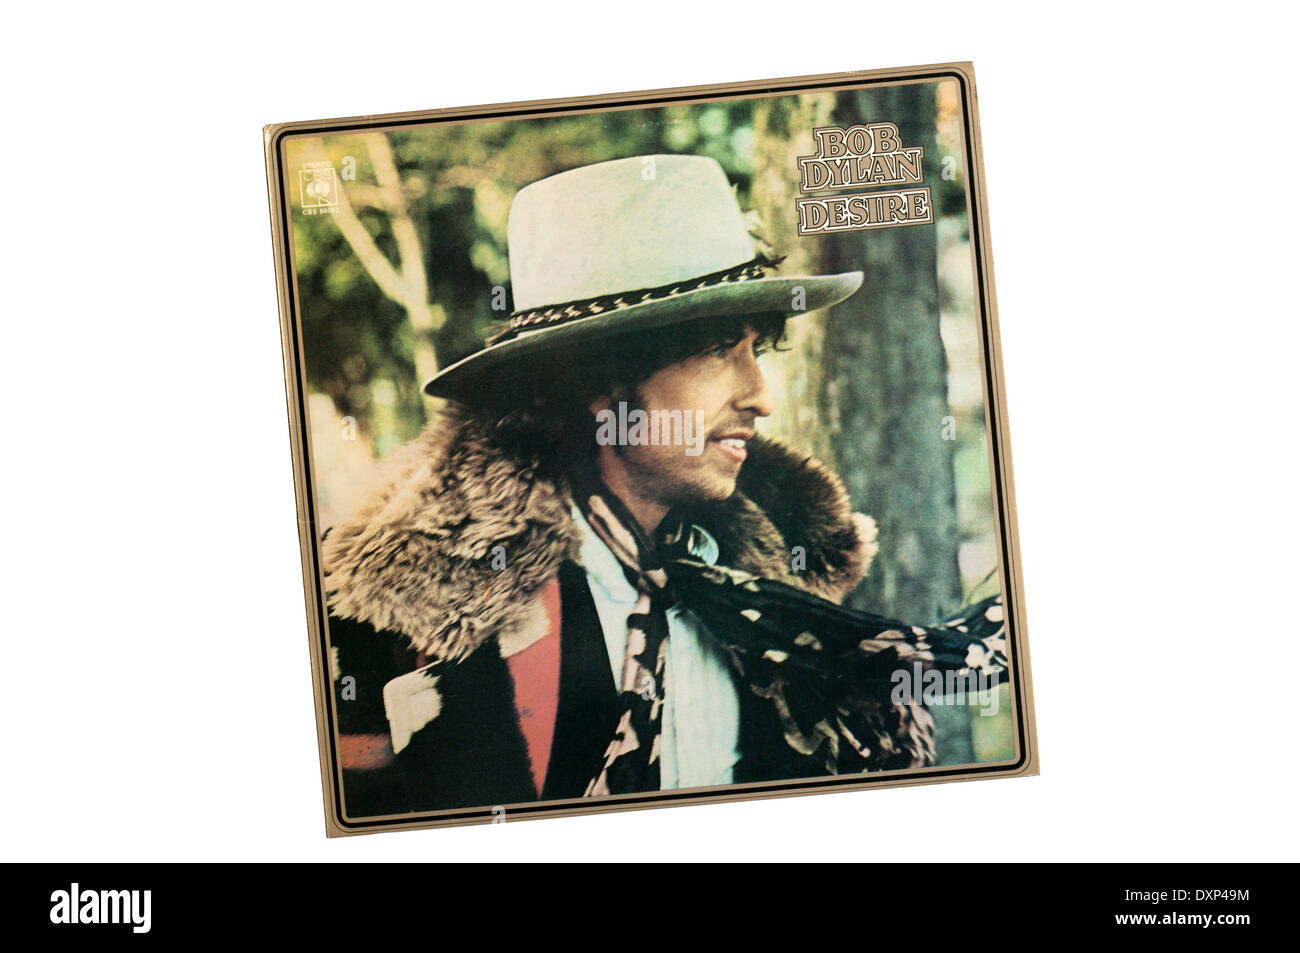 Wunsch war das 17. Studioalbum US-amerikanischer Singer-Songwriter Bob Dylan. Es wurde 1976 von Columbia Records veröffentlicht. Stockfoto